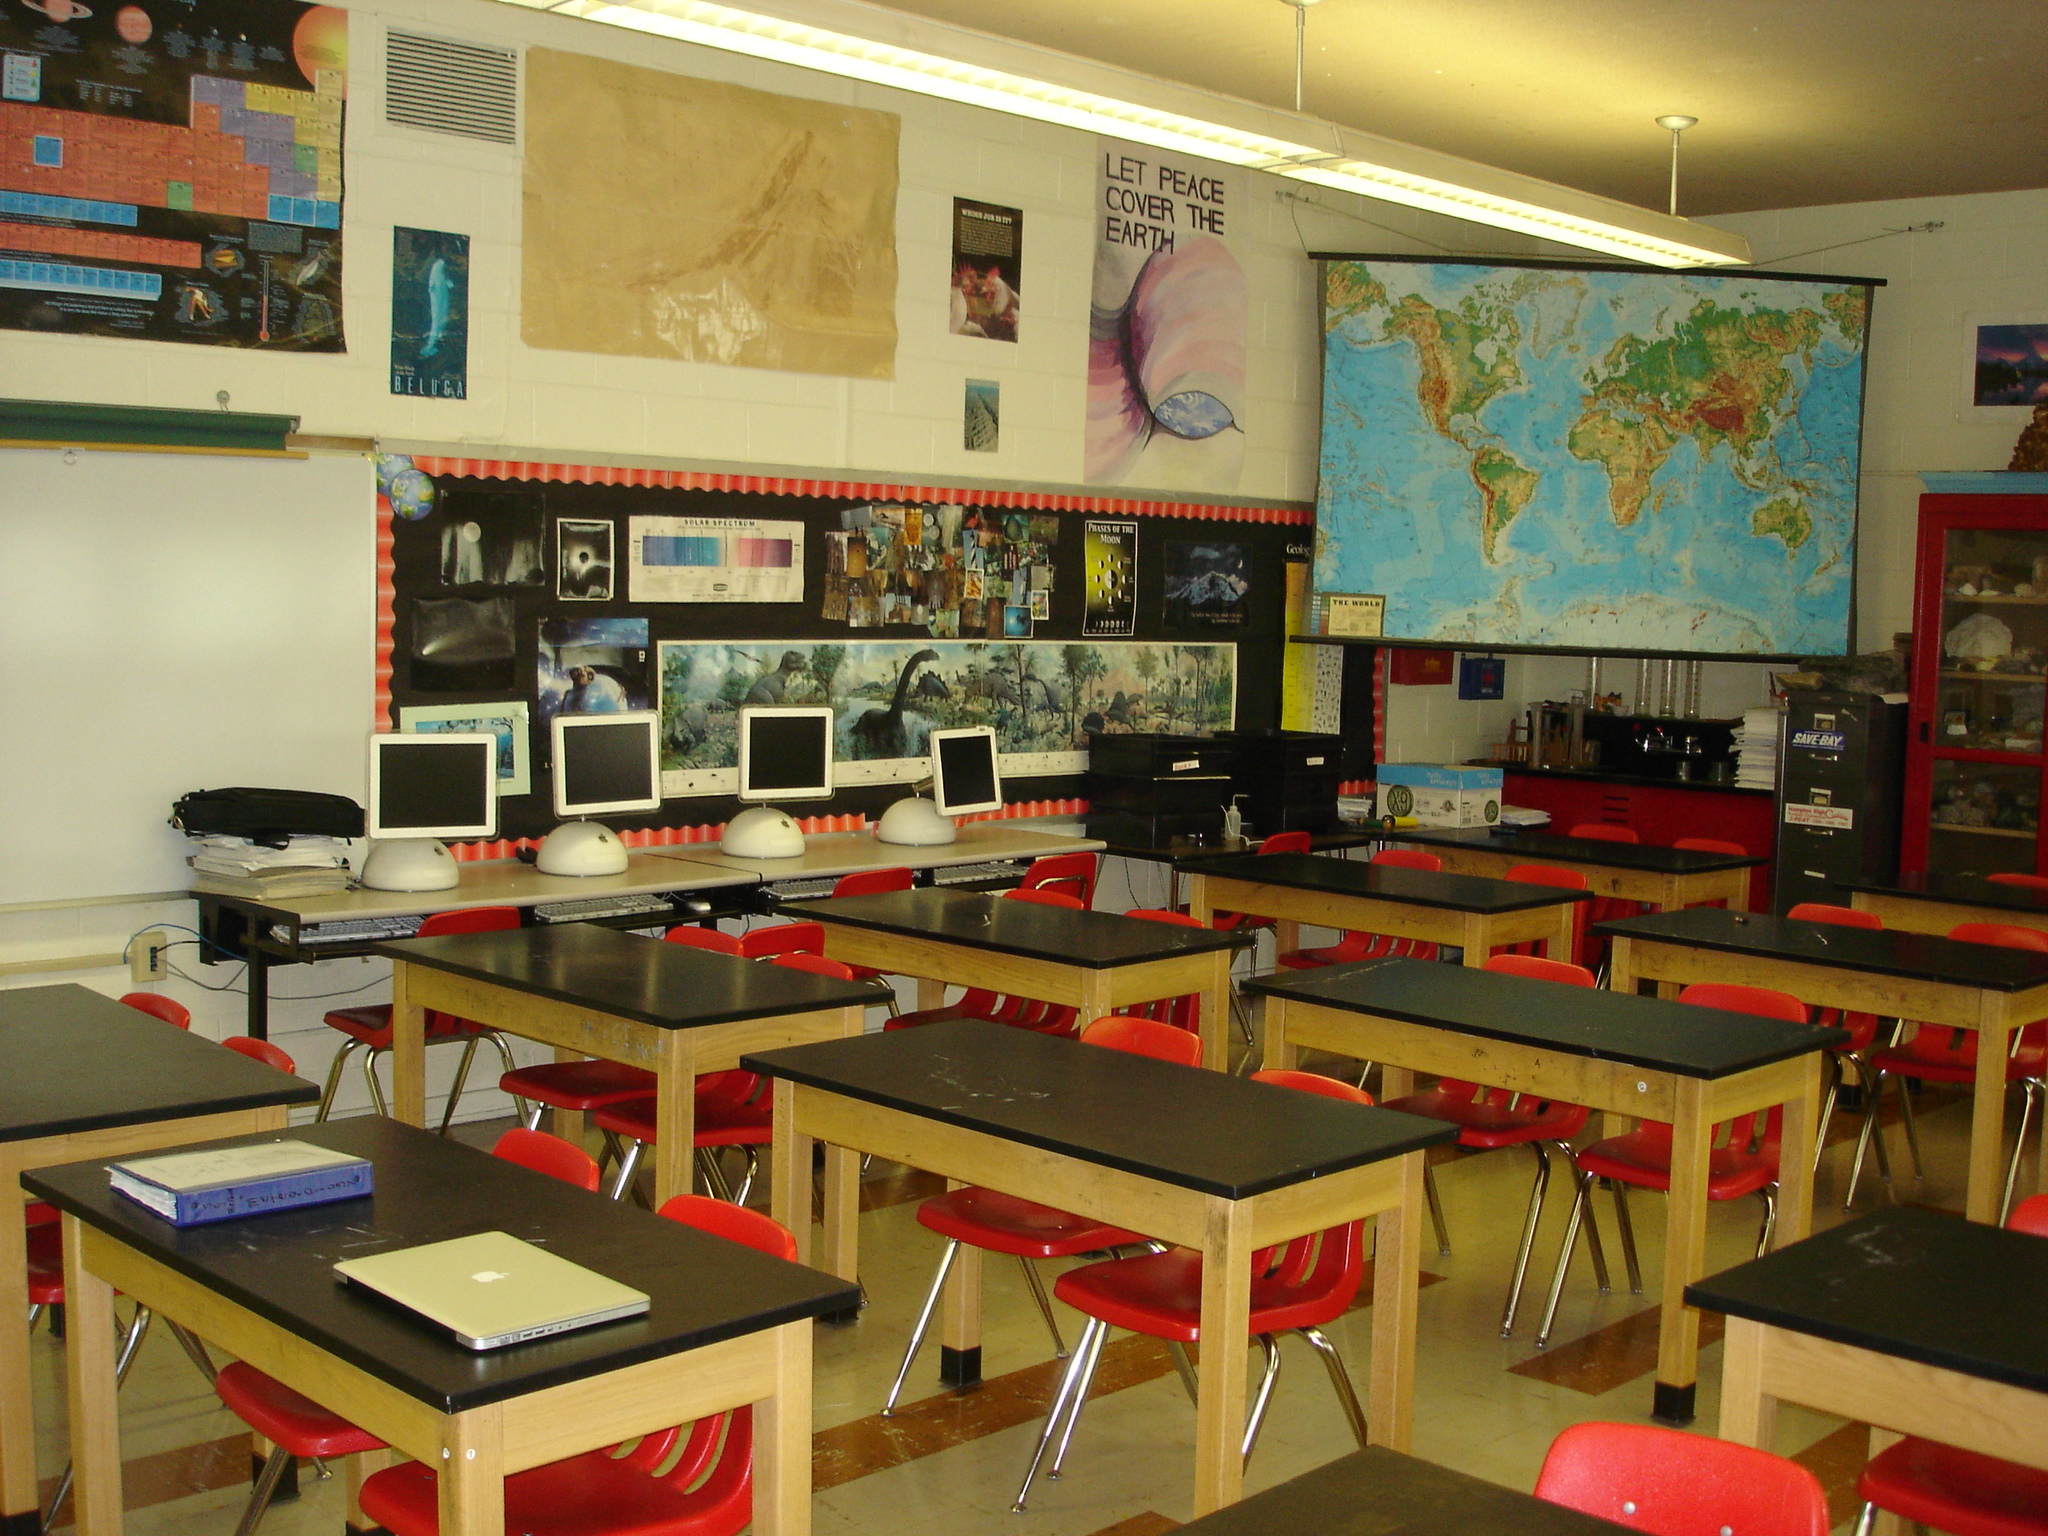 classroom-earth-science-classroom-photo-from-nasa-my-nasa-data-site1.jpg